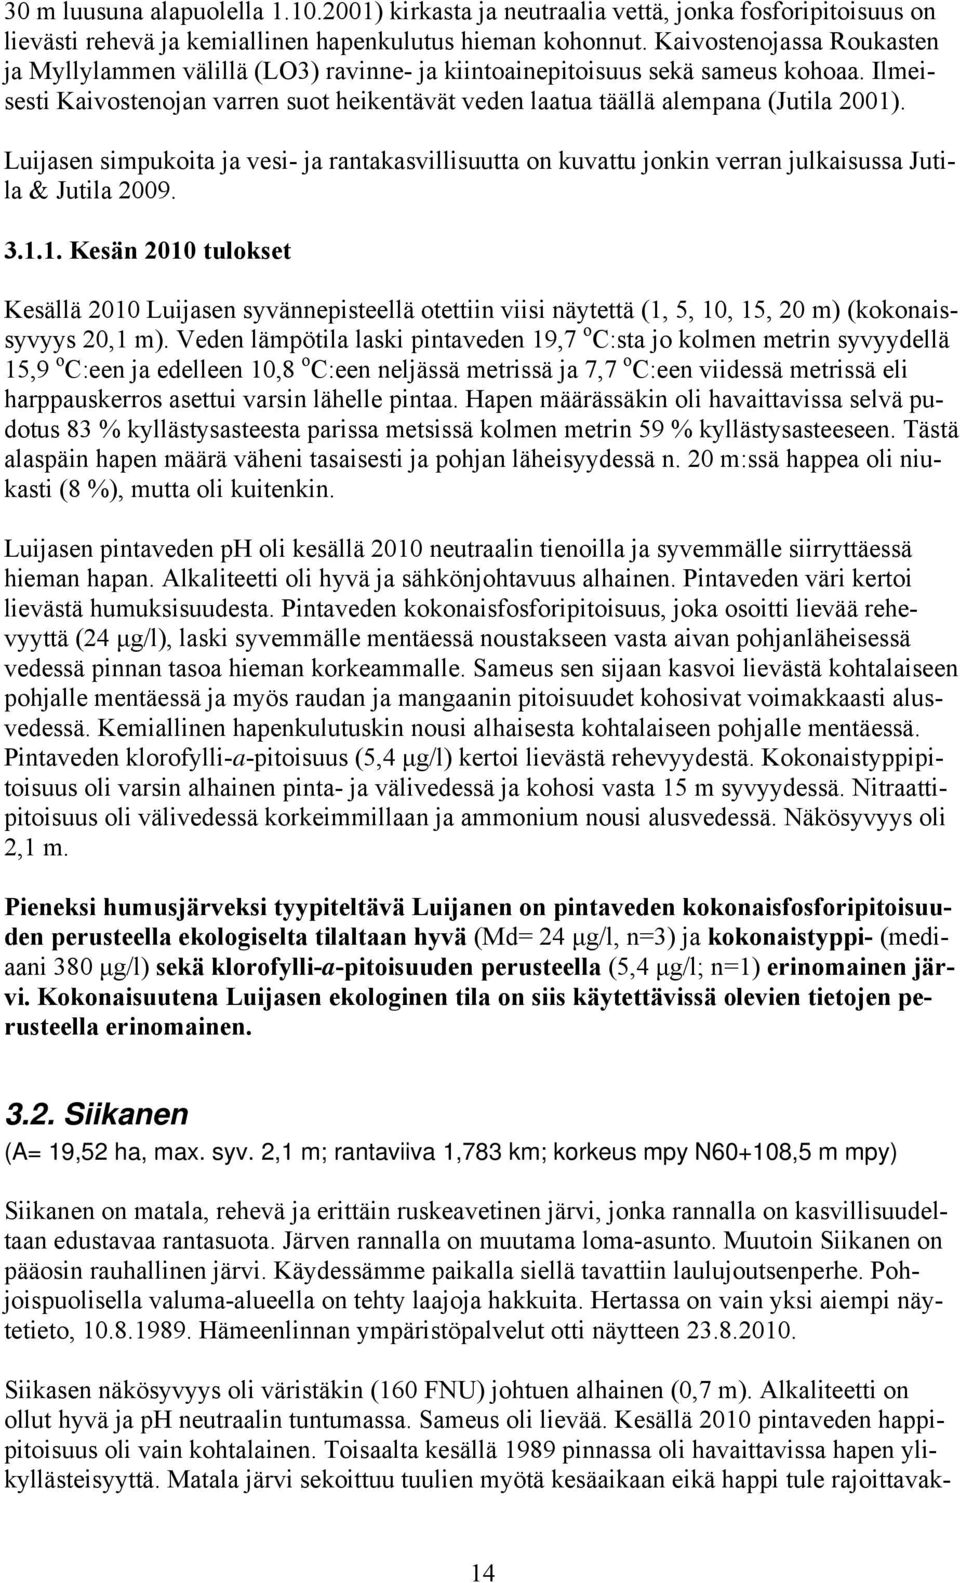 Luijasen simpukoita ja vesi- ja rantakasvillisuutta on kuvattu jonkin verran julkaisussa Jutila & Jutila 2009. 3.1.